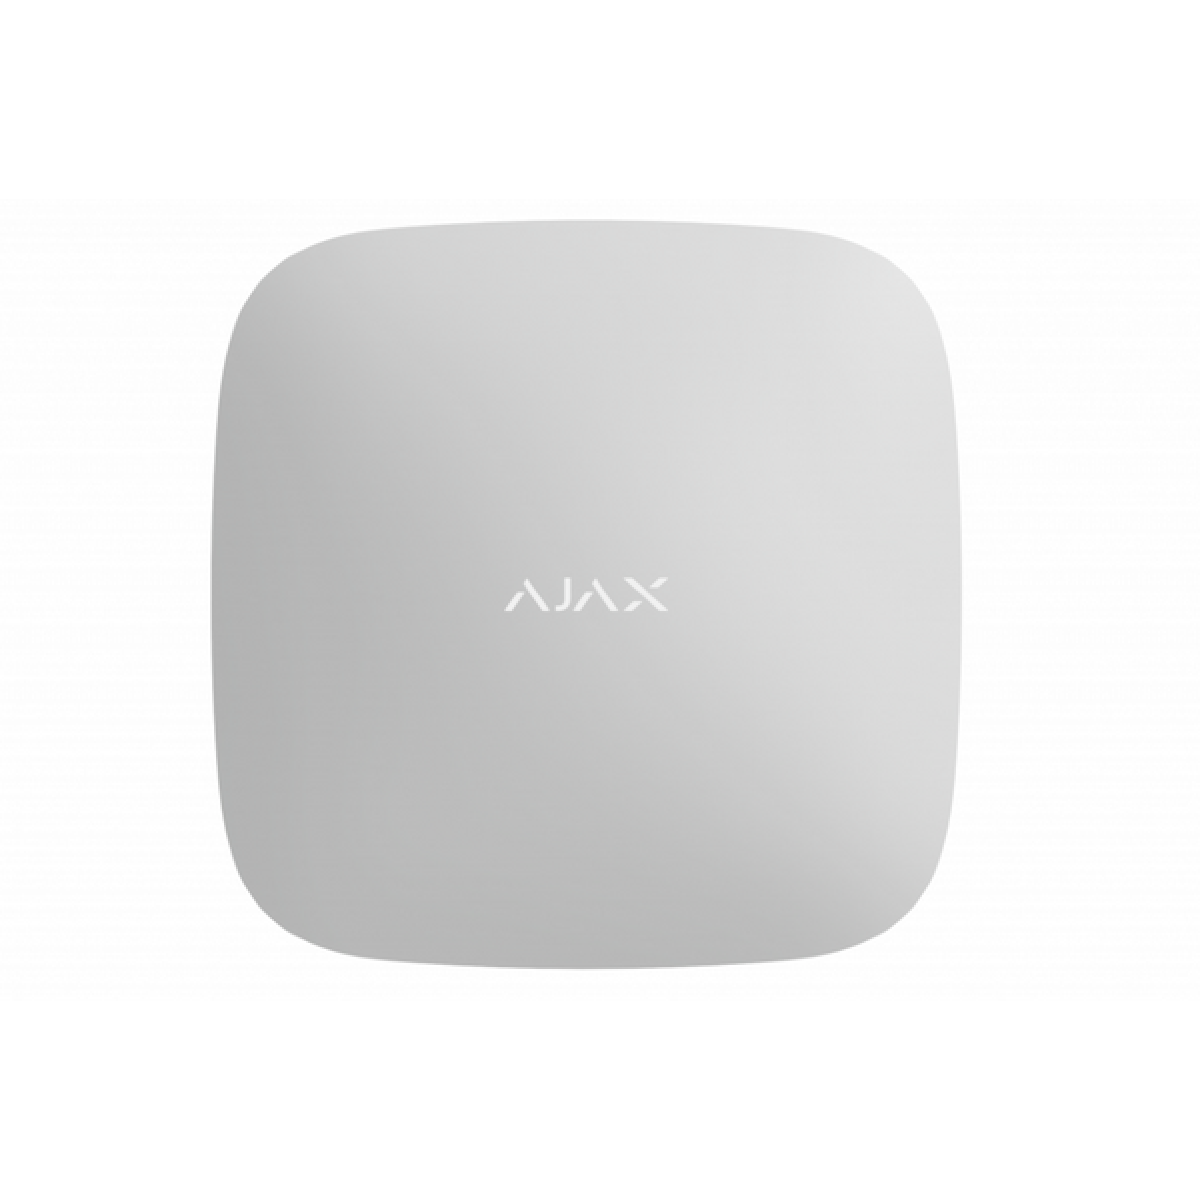 من اجاكس ReX 2 موسع نطاق إشارة الراديو مع دعم التحقق من الصور باللون أبيض